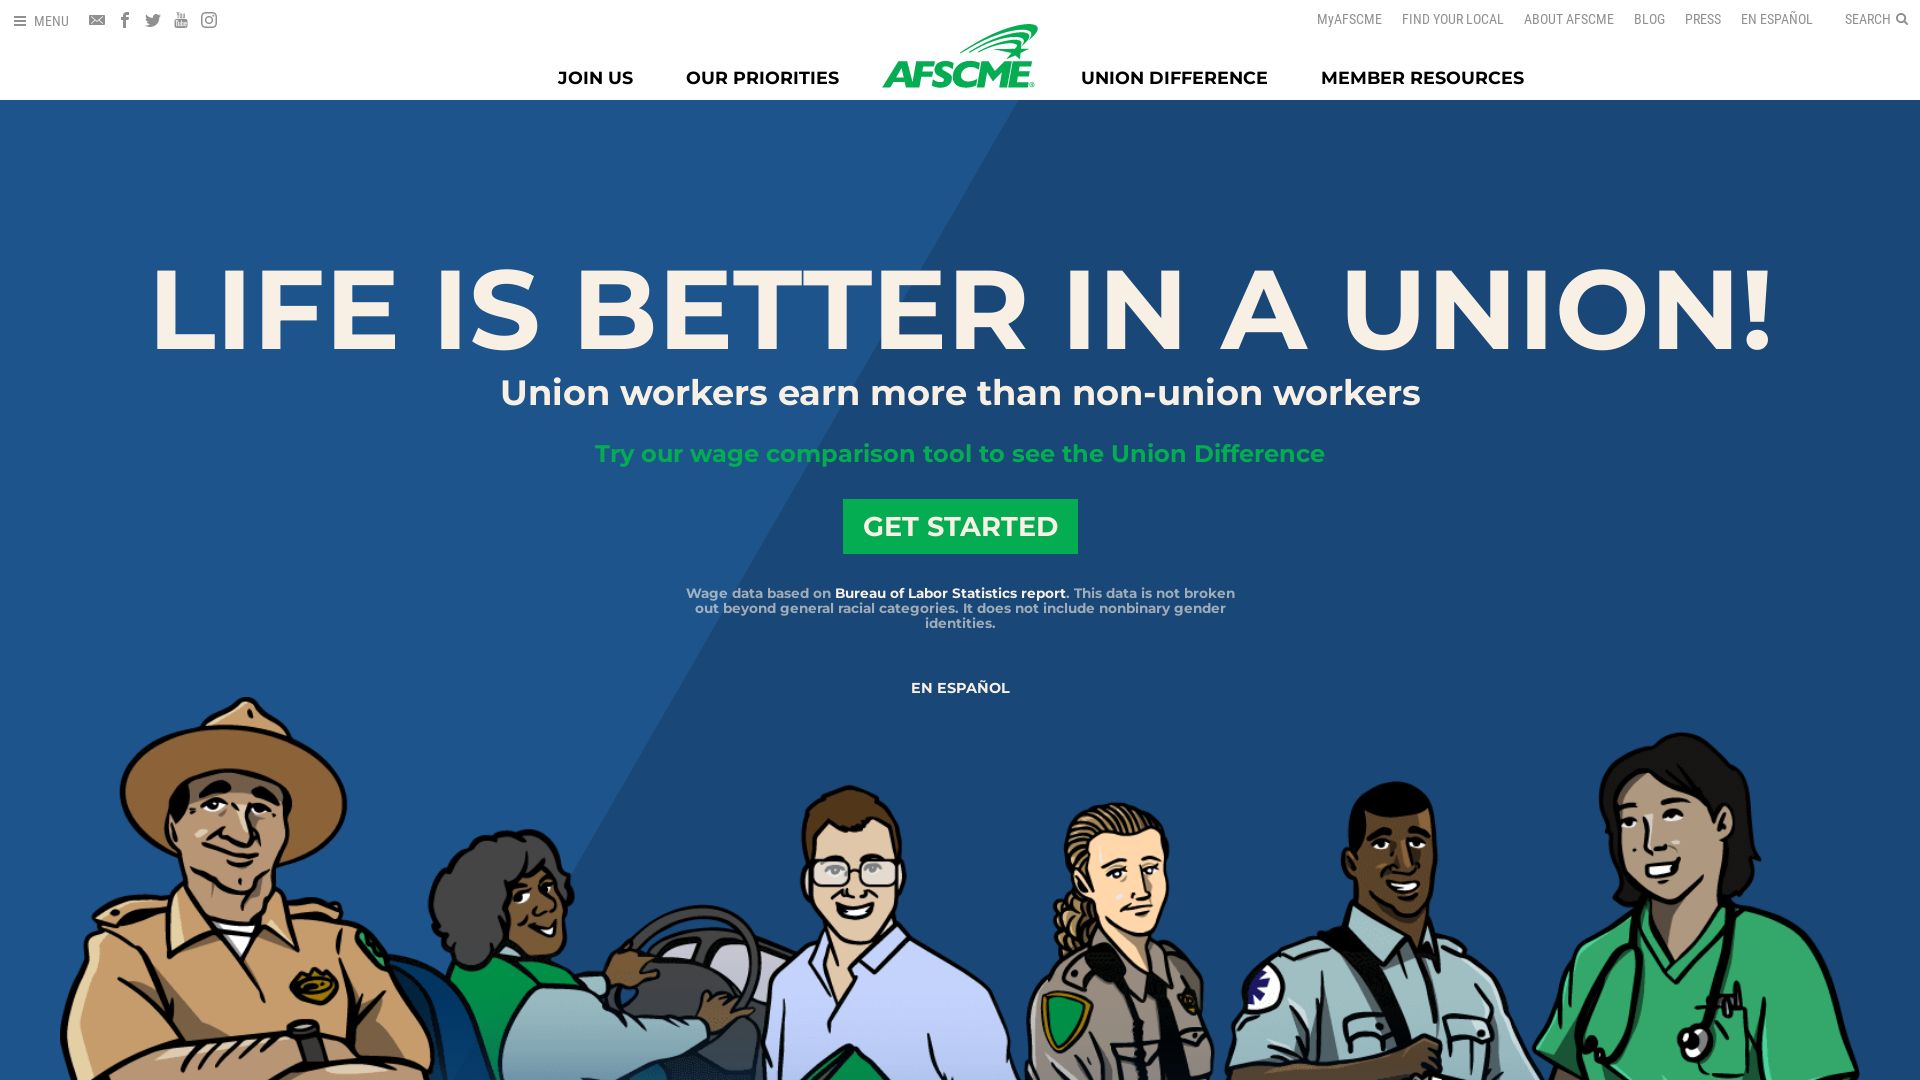 Stato del sito web union-wages.org è   ONLINE